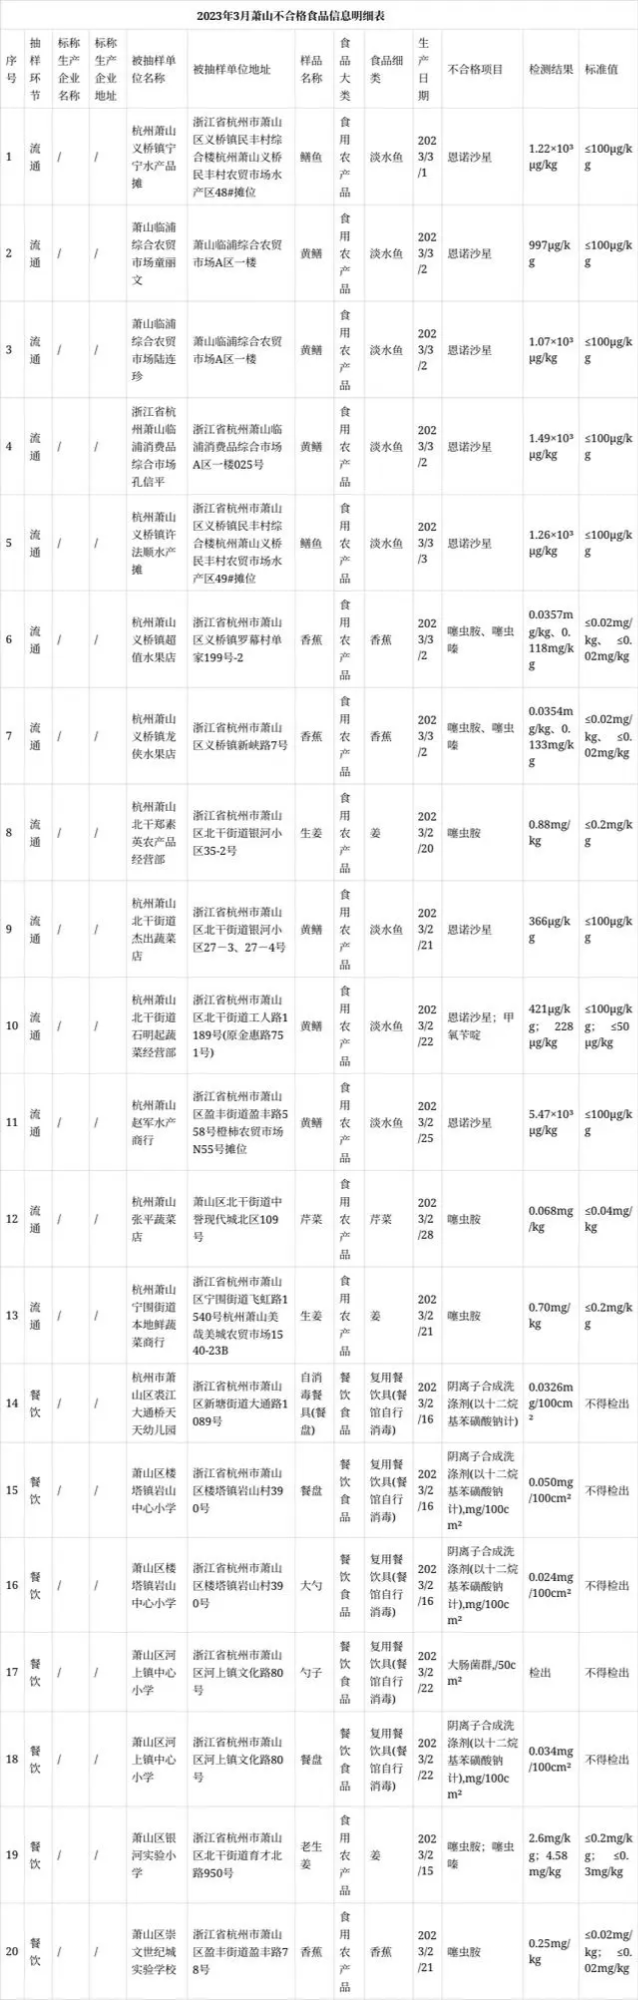 杭州市萧山区食品安全监督抽样检测情况通报